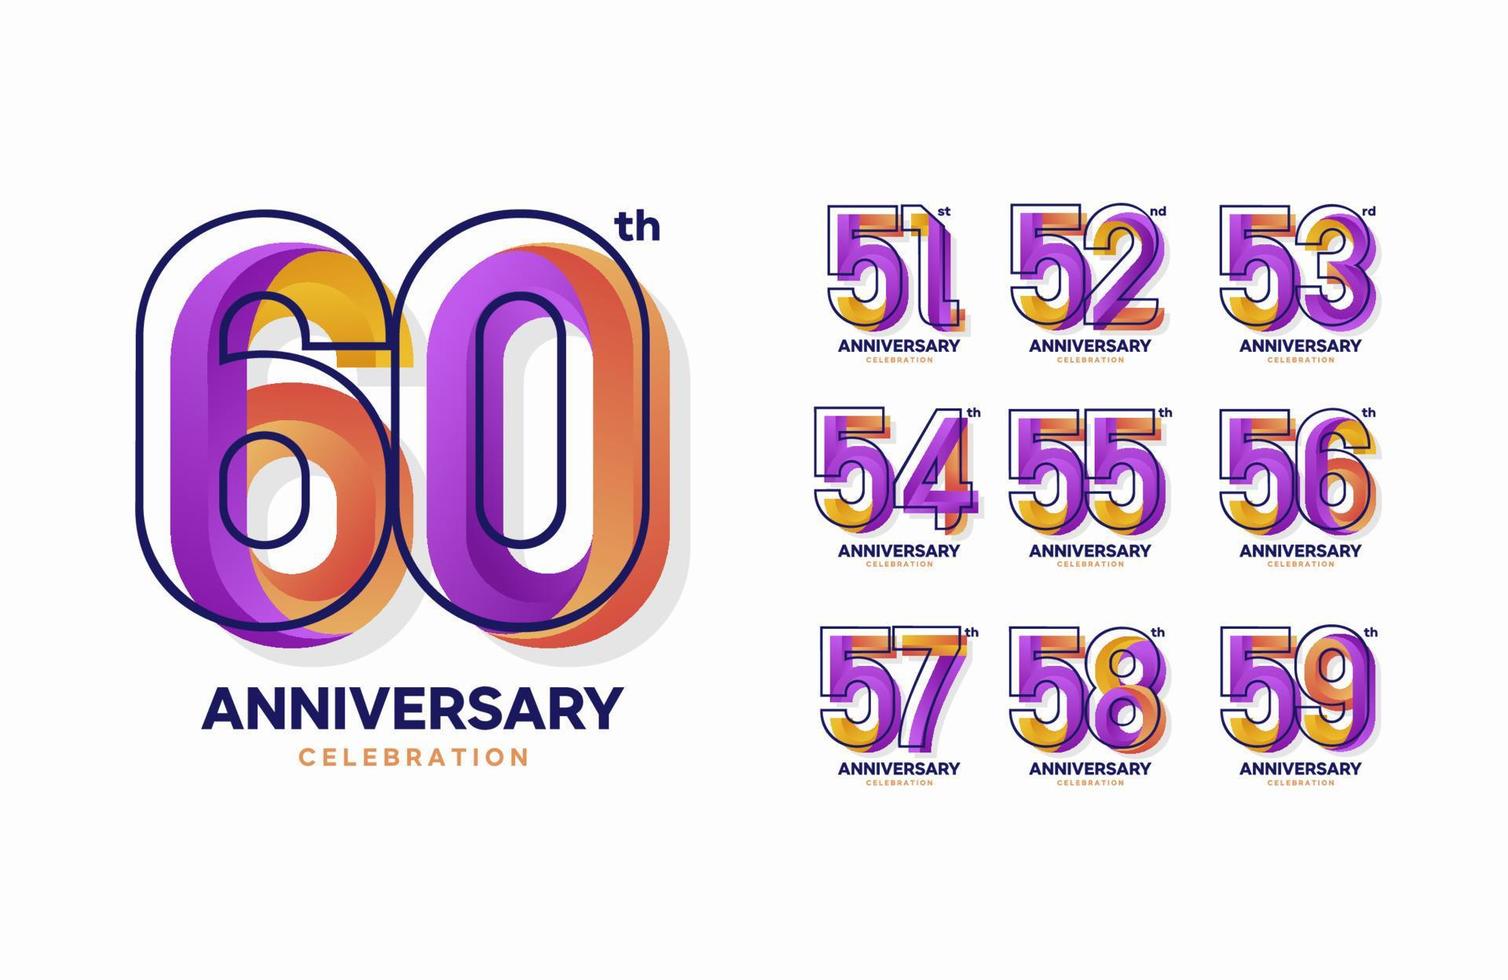 conjunto de logotipo de aniversário colorido. 51, 52, 53, 54, 55, 56, 57, 58, 59, 60 vetor